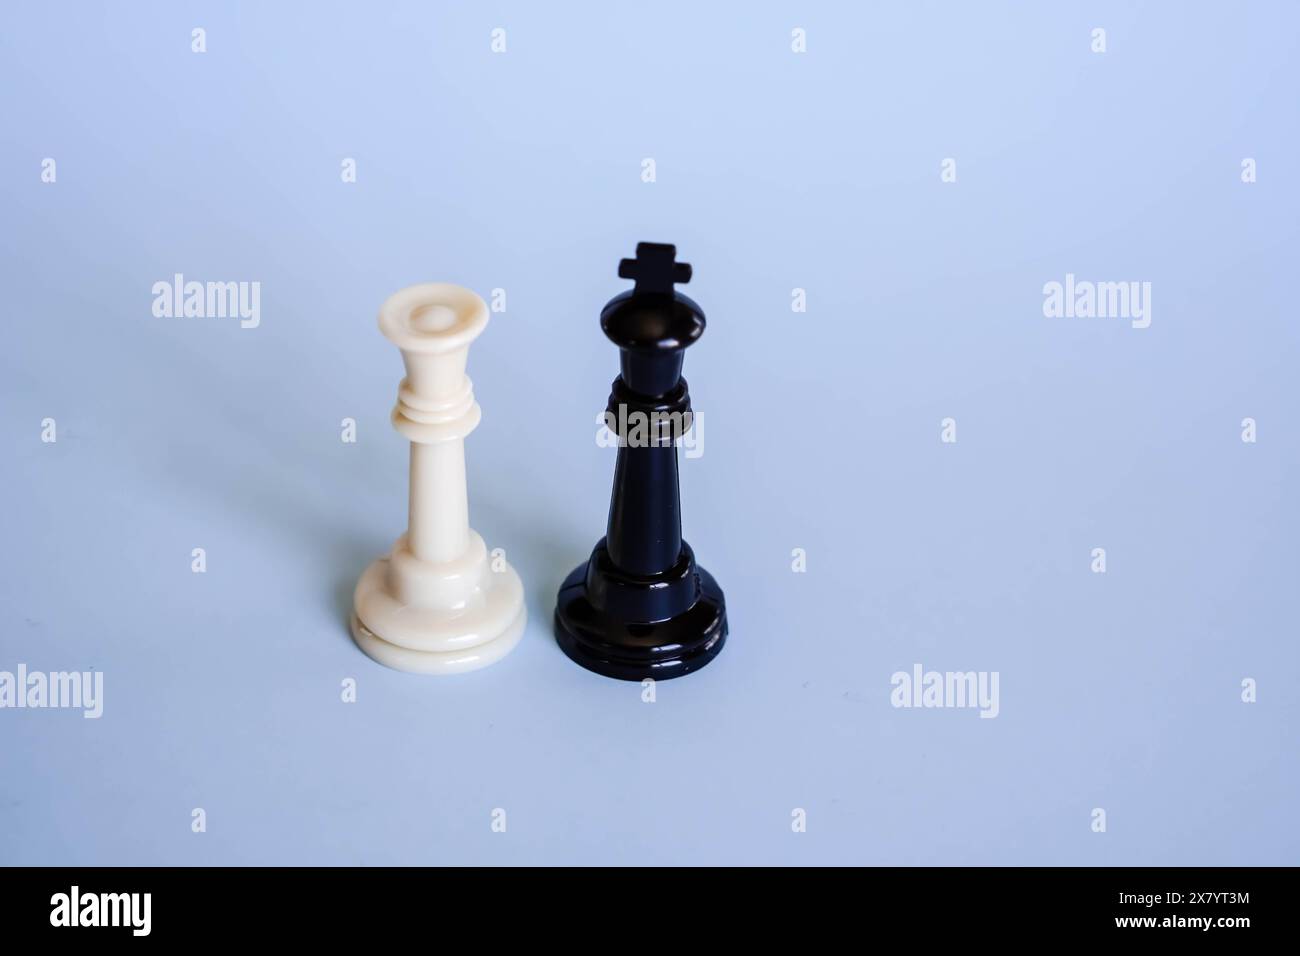 roi et reine d'échecs représentant l'égalité des chances entre les sexes Banque D'Images